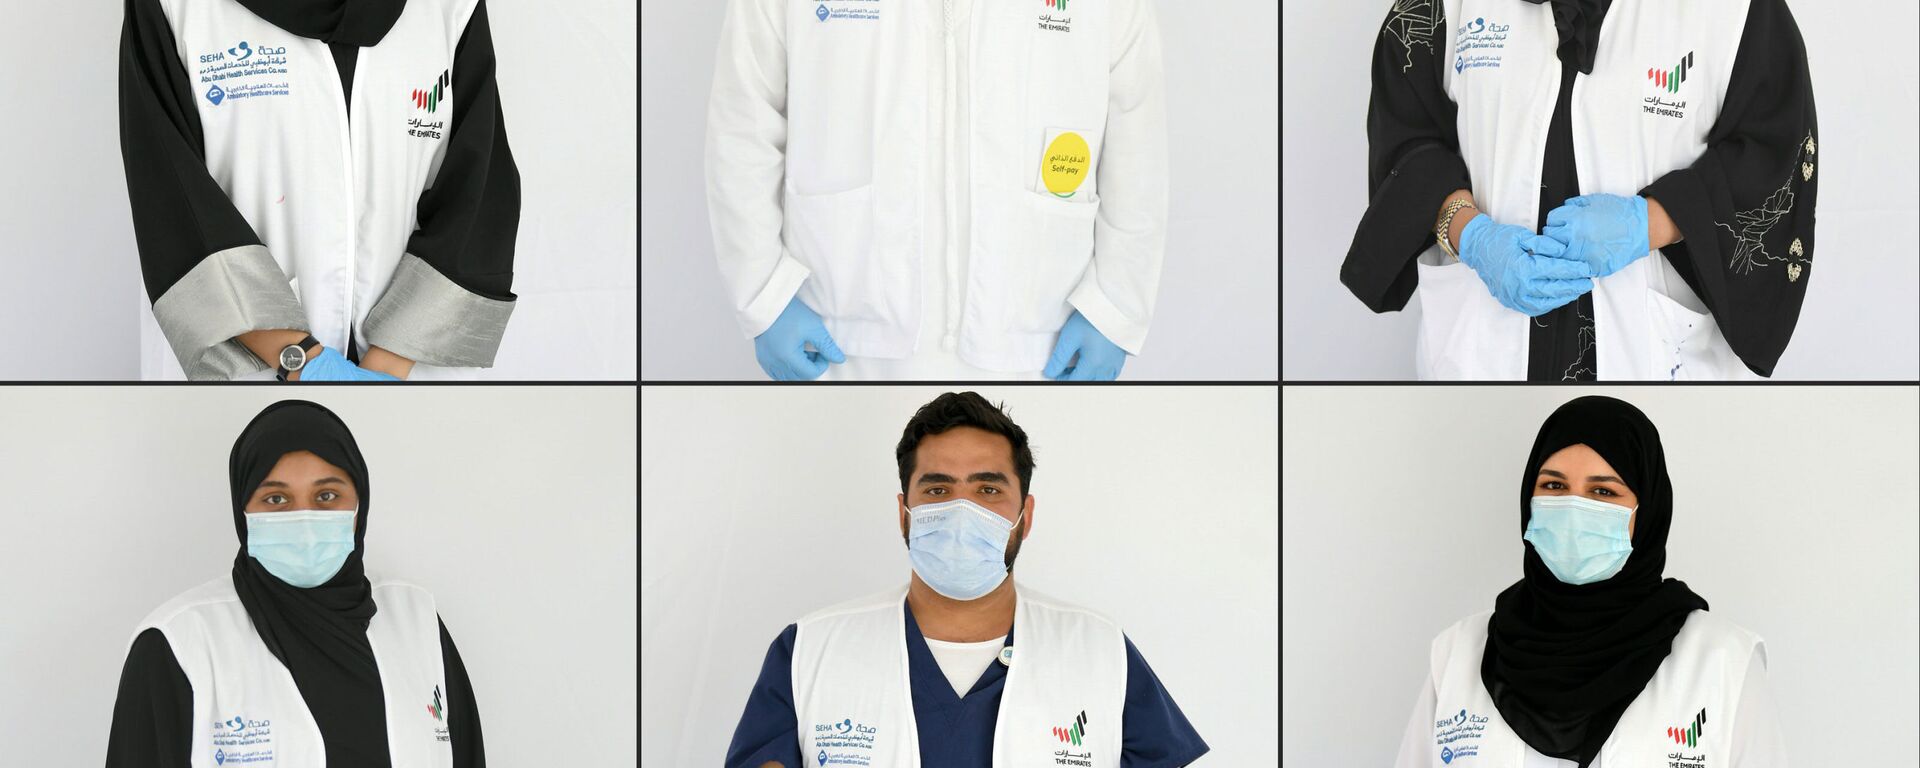 متطوعون لمساعدة الأطباء في مواجهة أزمة كورونا في الإمارات العربية المتحدة، 9 أبريل 2020 - سبوتنيك عربي, 1920, 15.07.2020